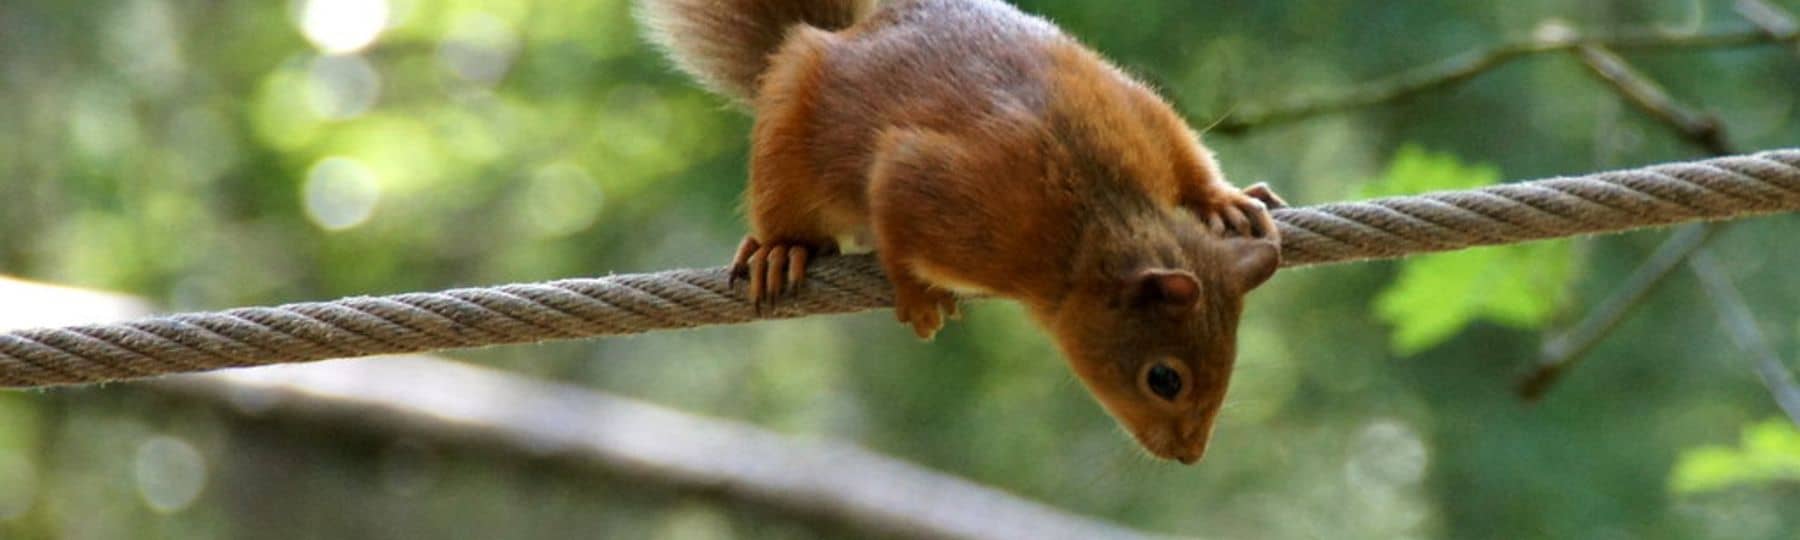 Photo d'un écureuil suspendu à une corde tendue.